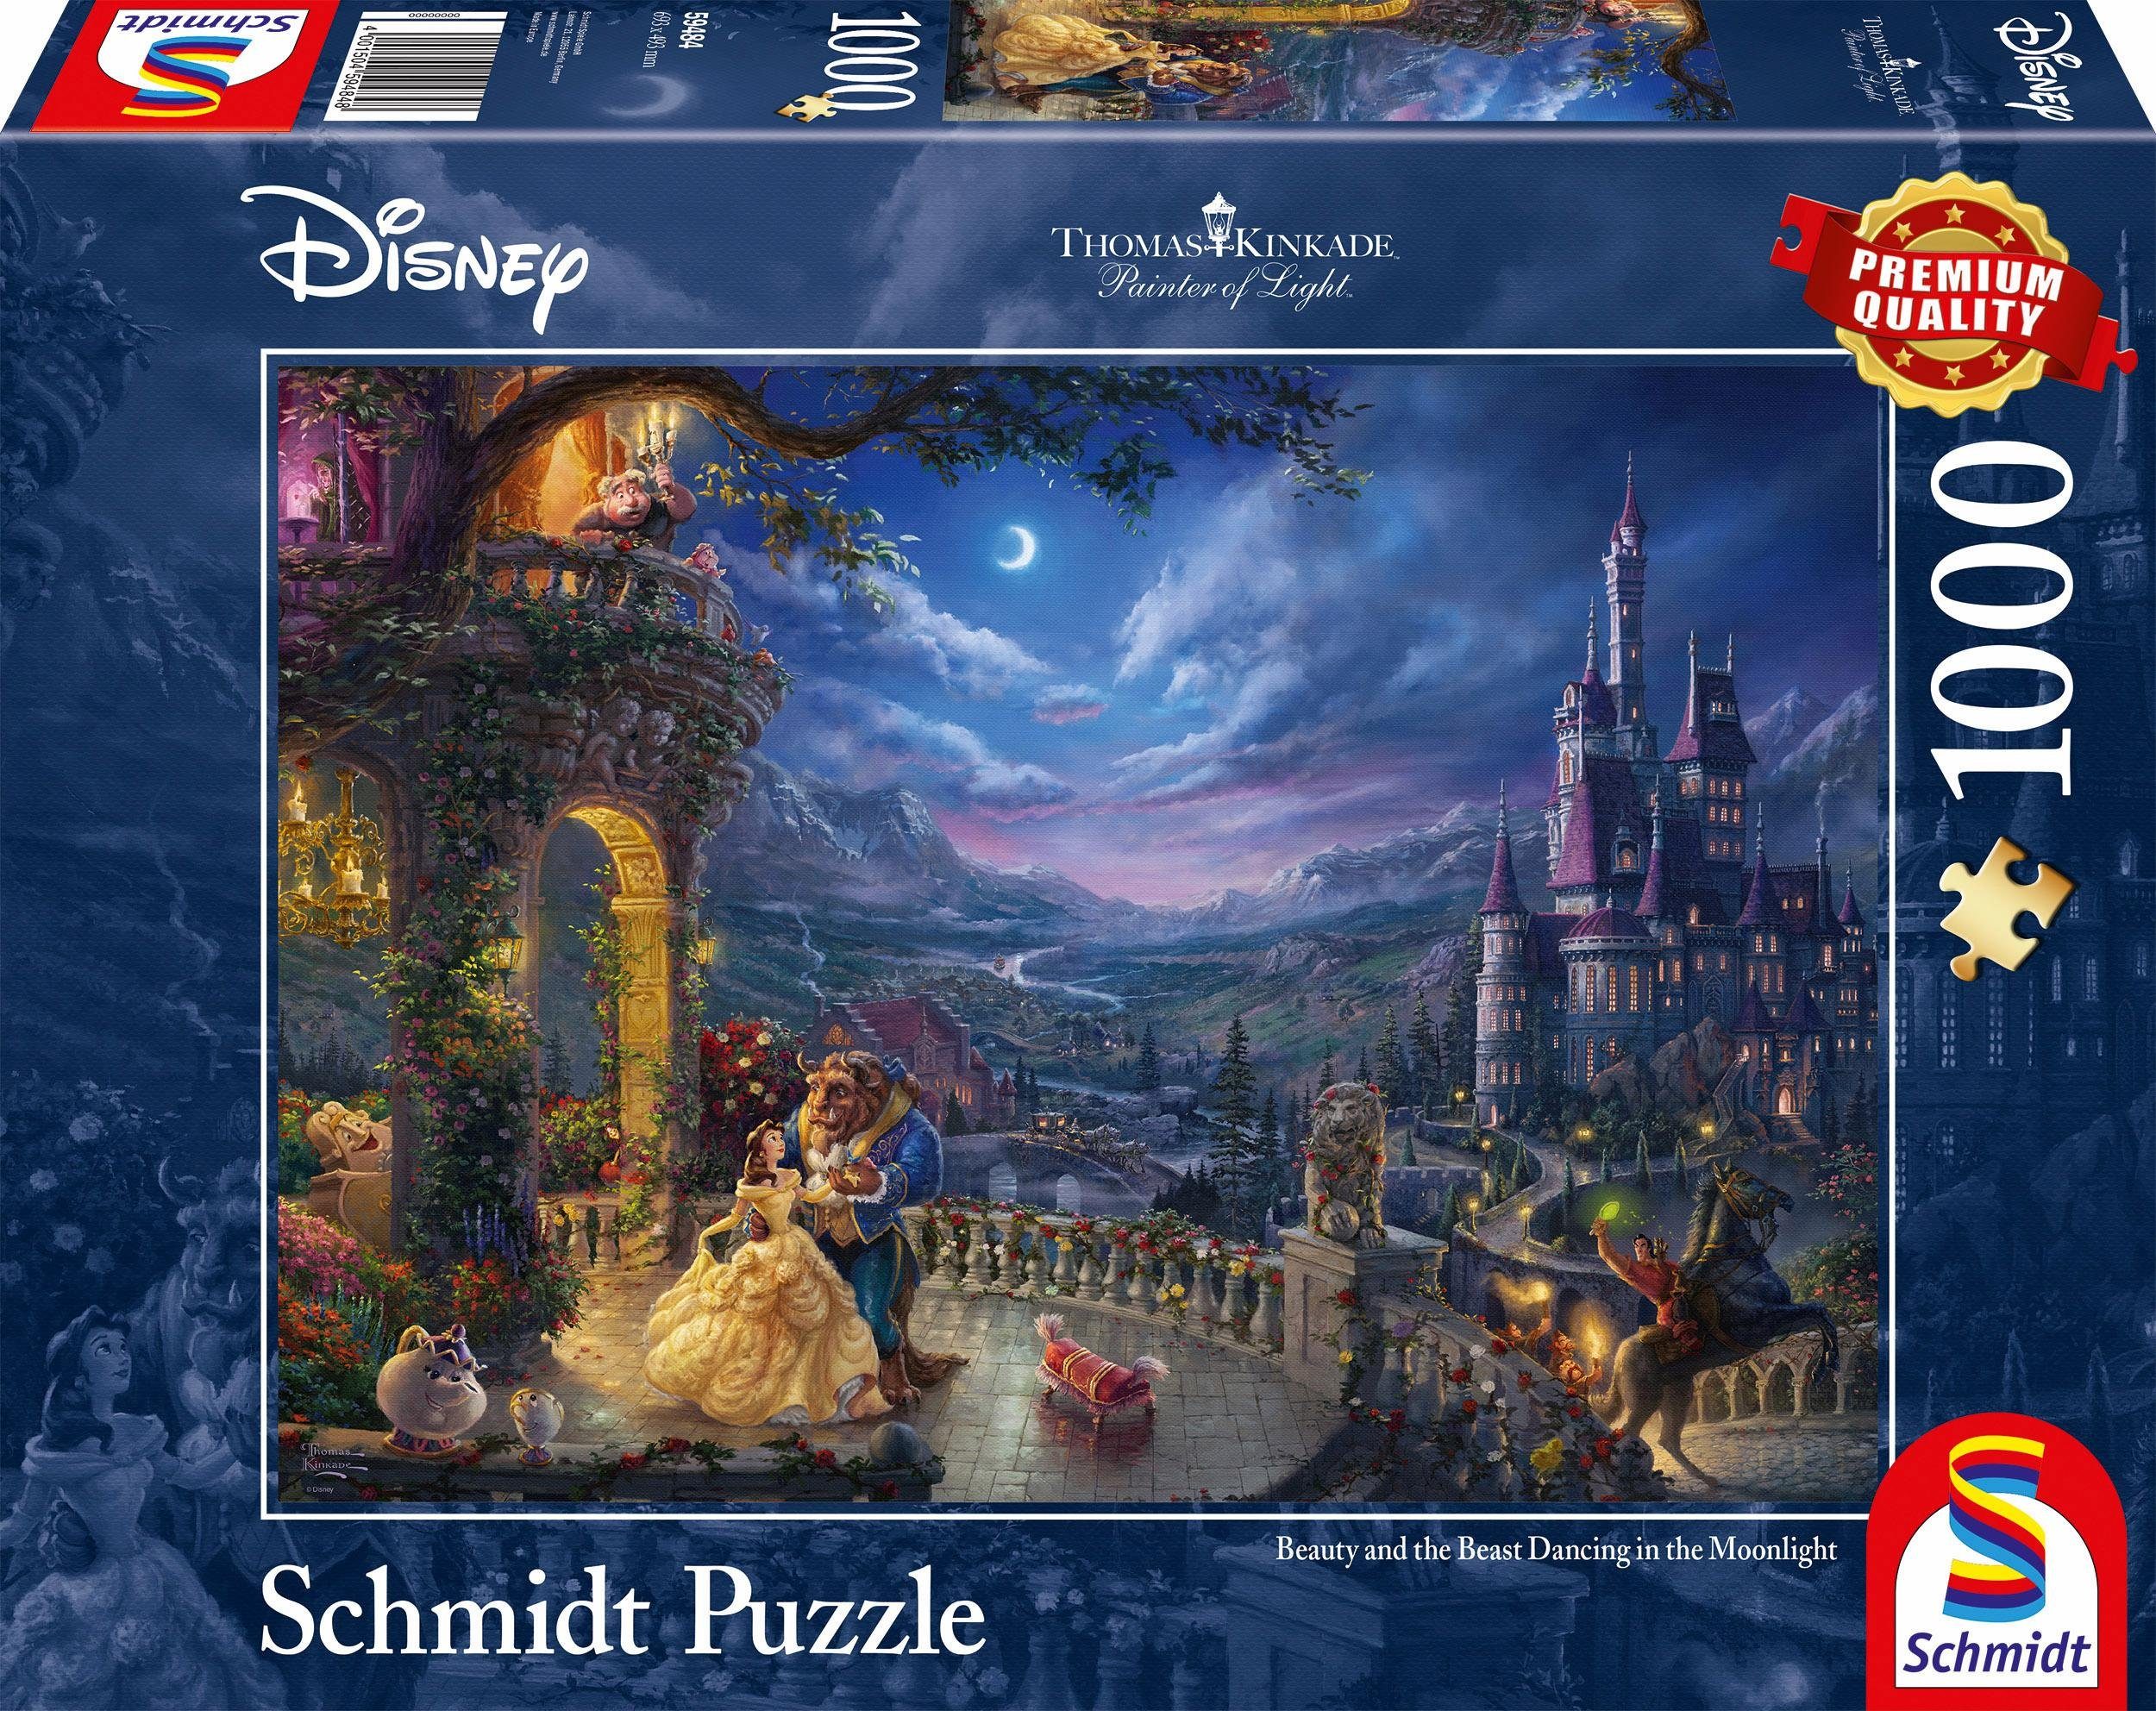 Günstige Puzzle kaufen » Kinderpuzzle & Erwachsenenpuzzle | OTTO